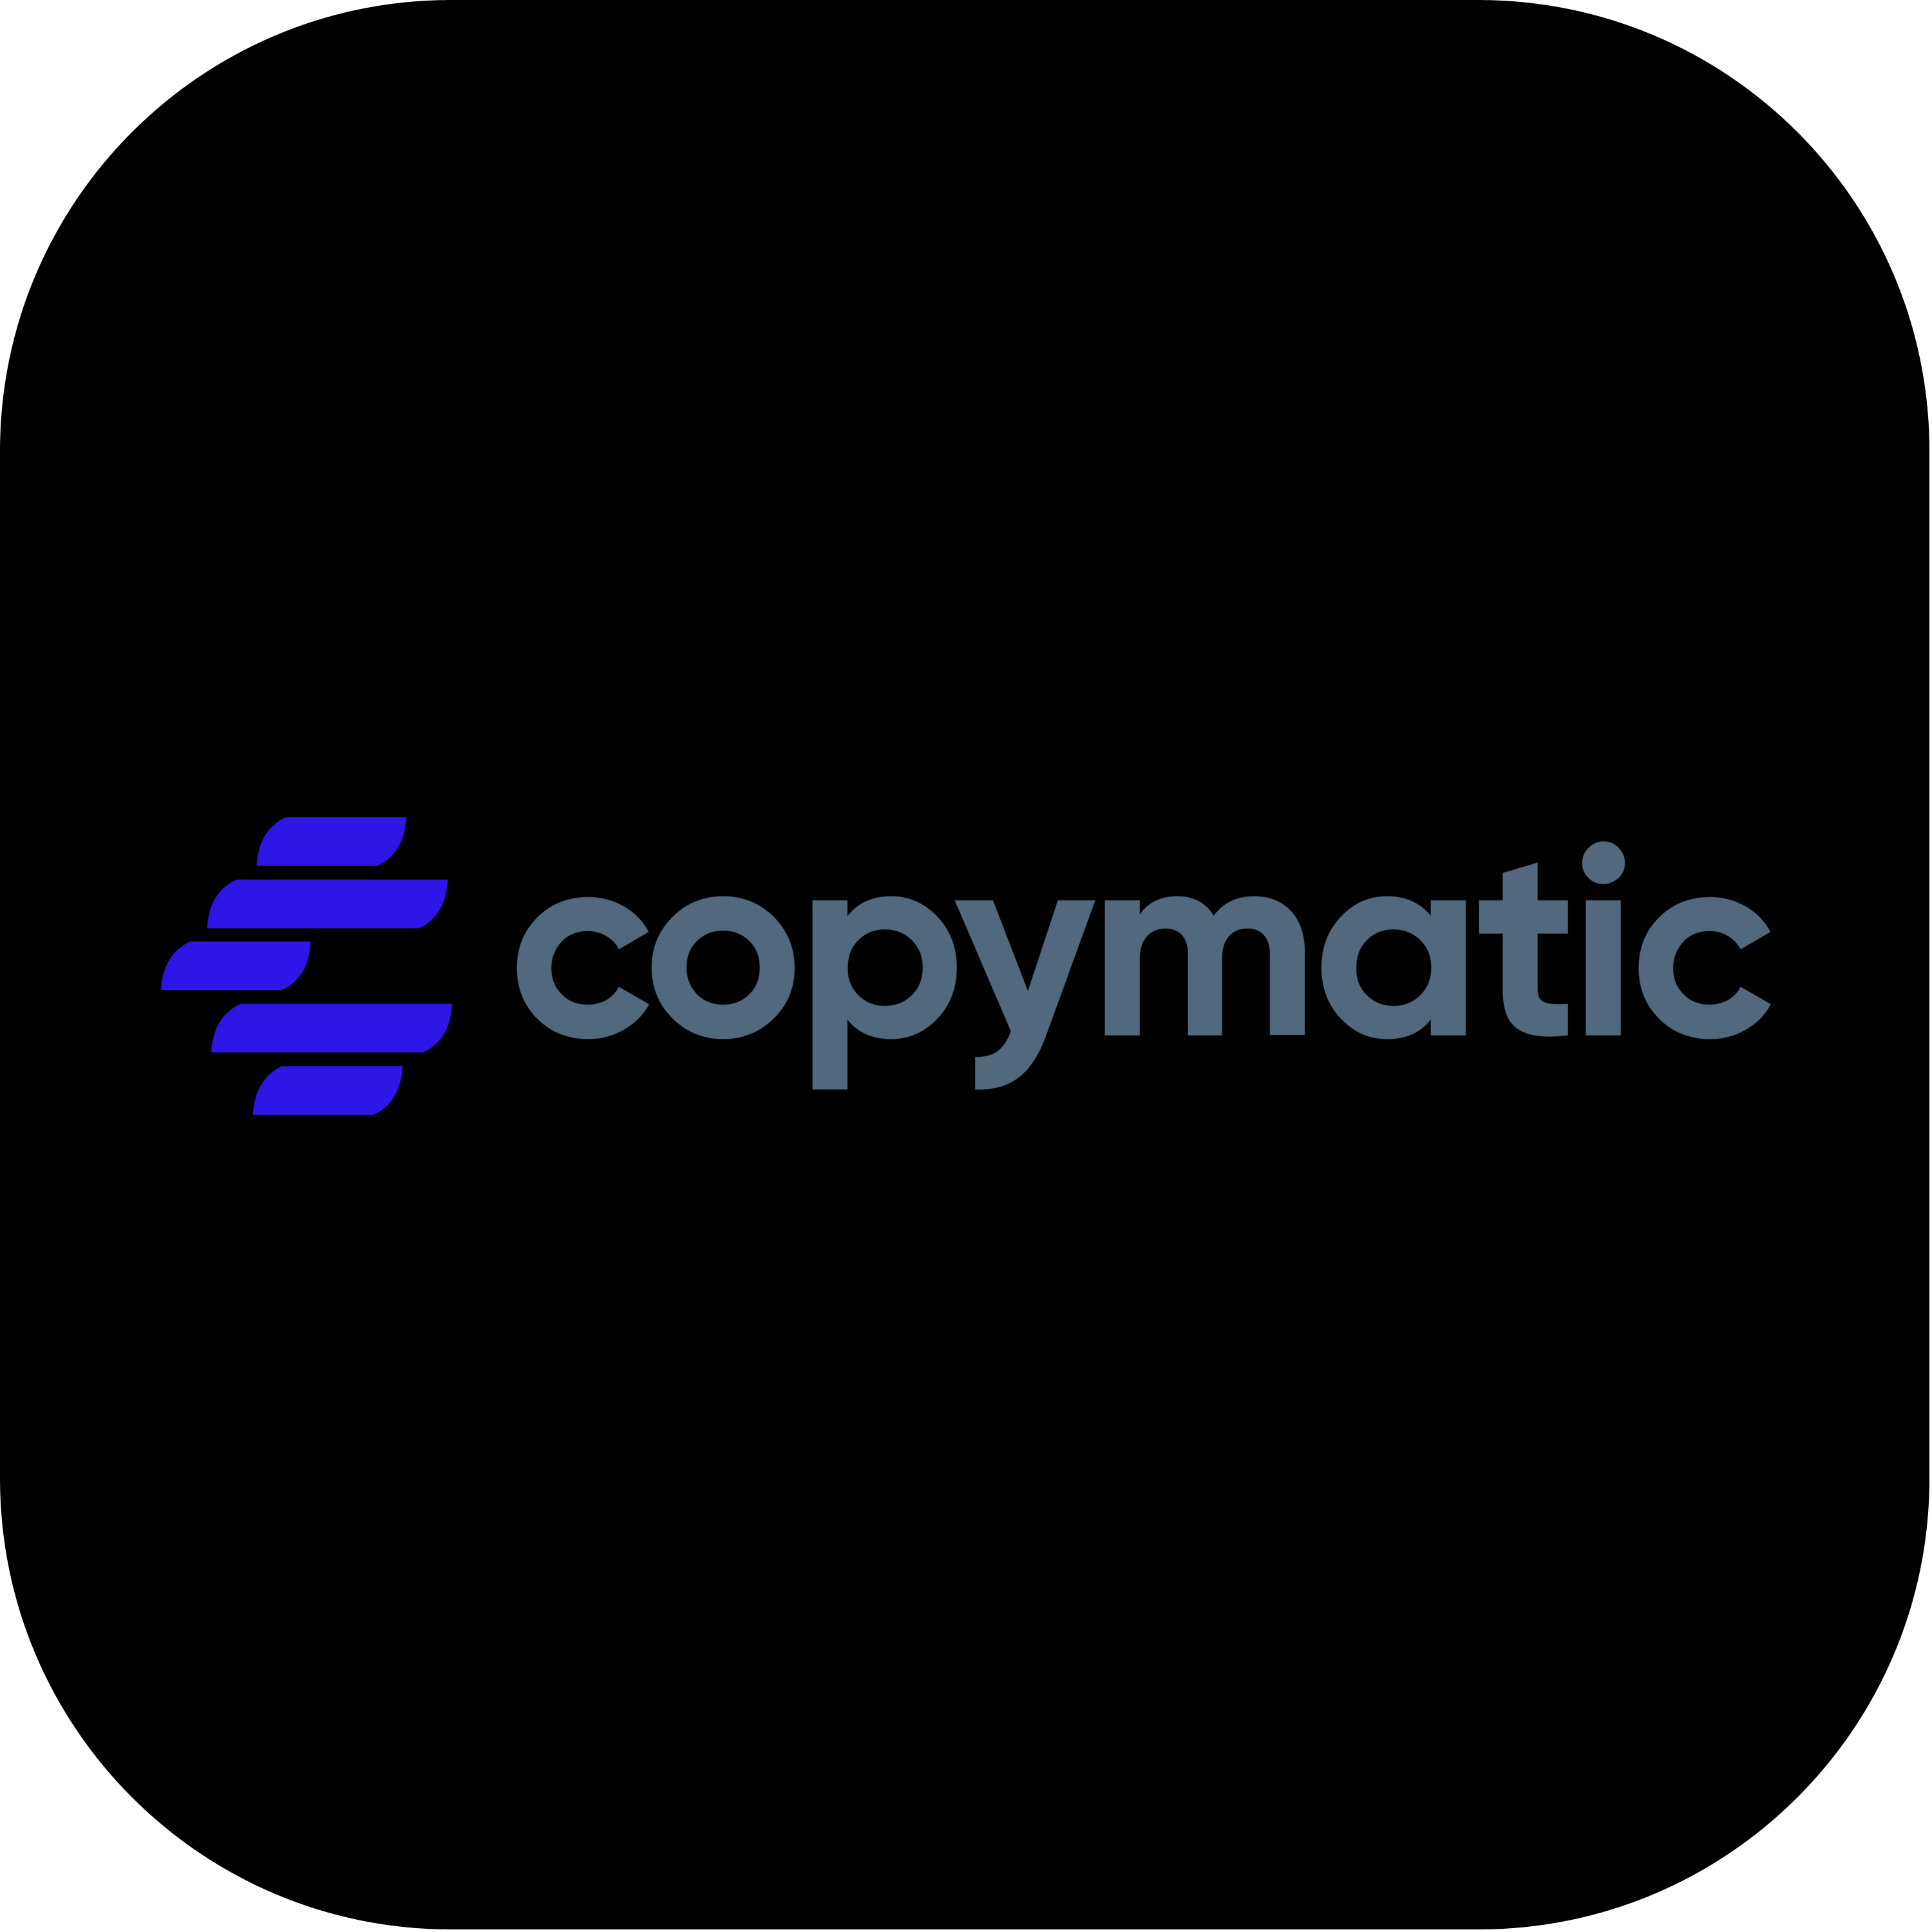 Copymatic Logo Transparent Photo